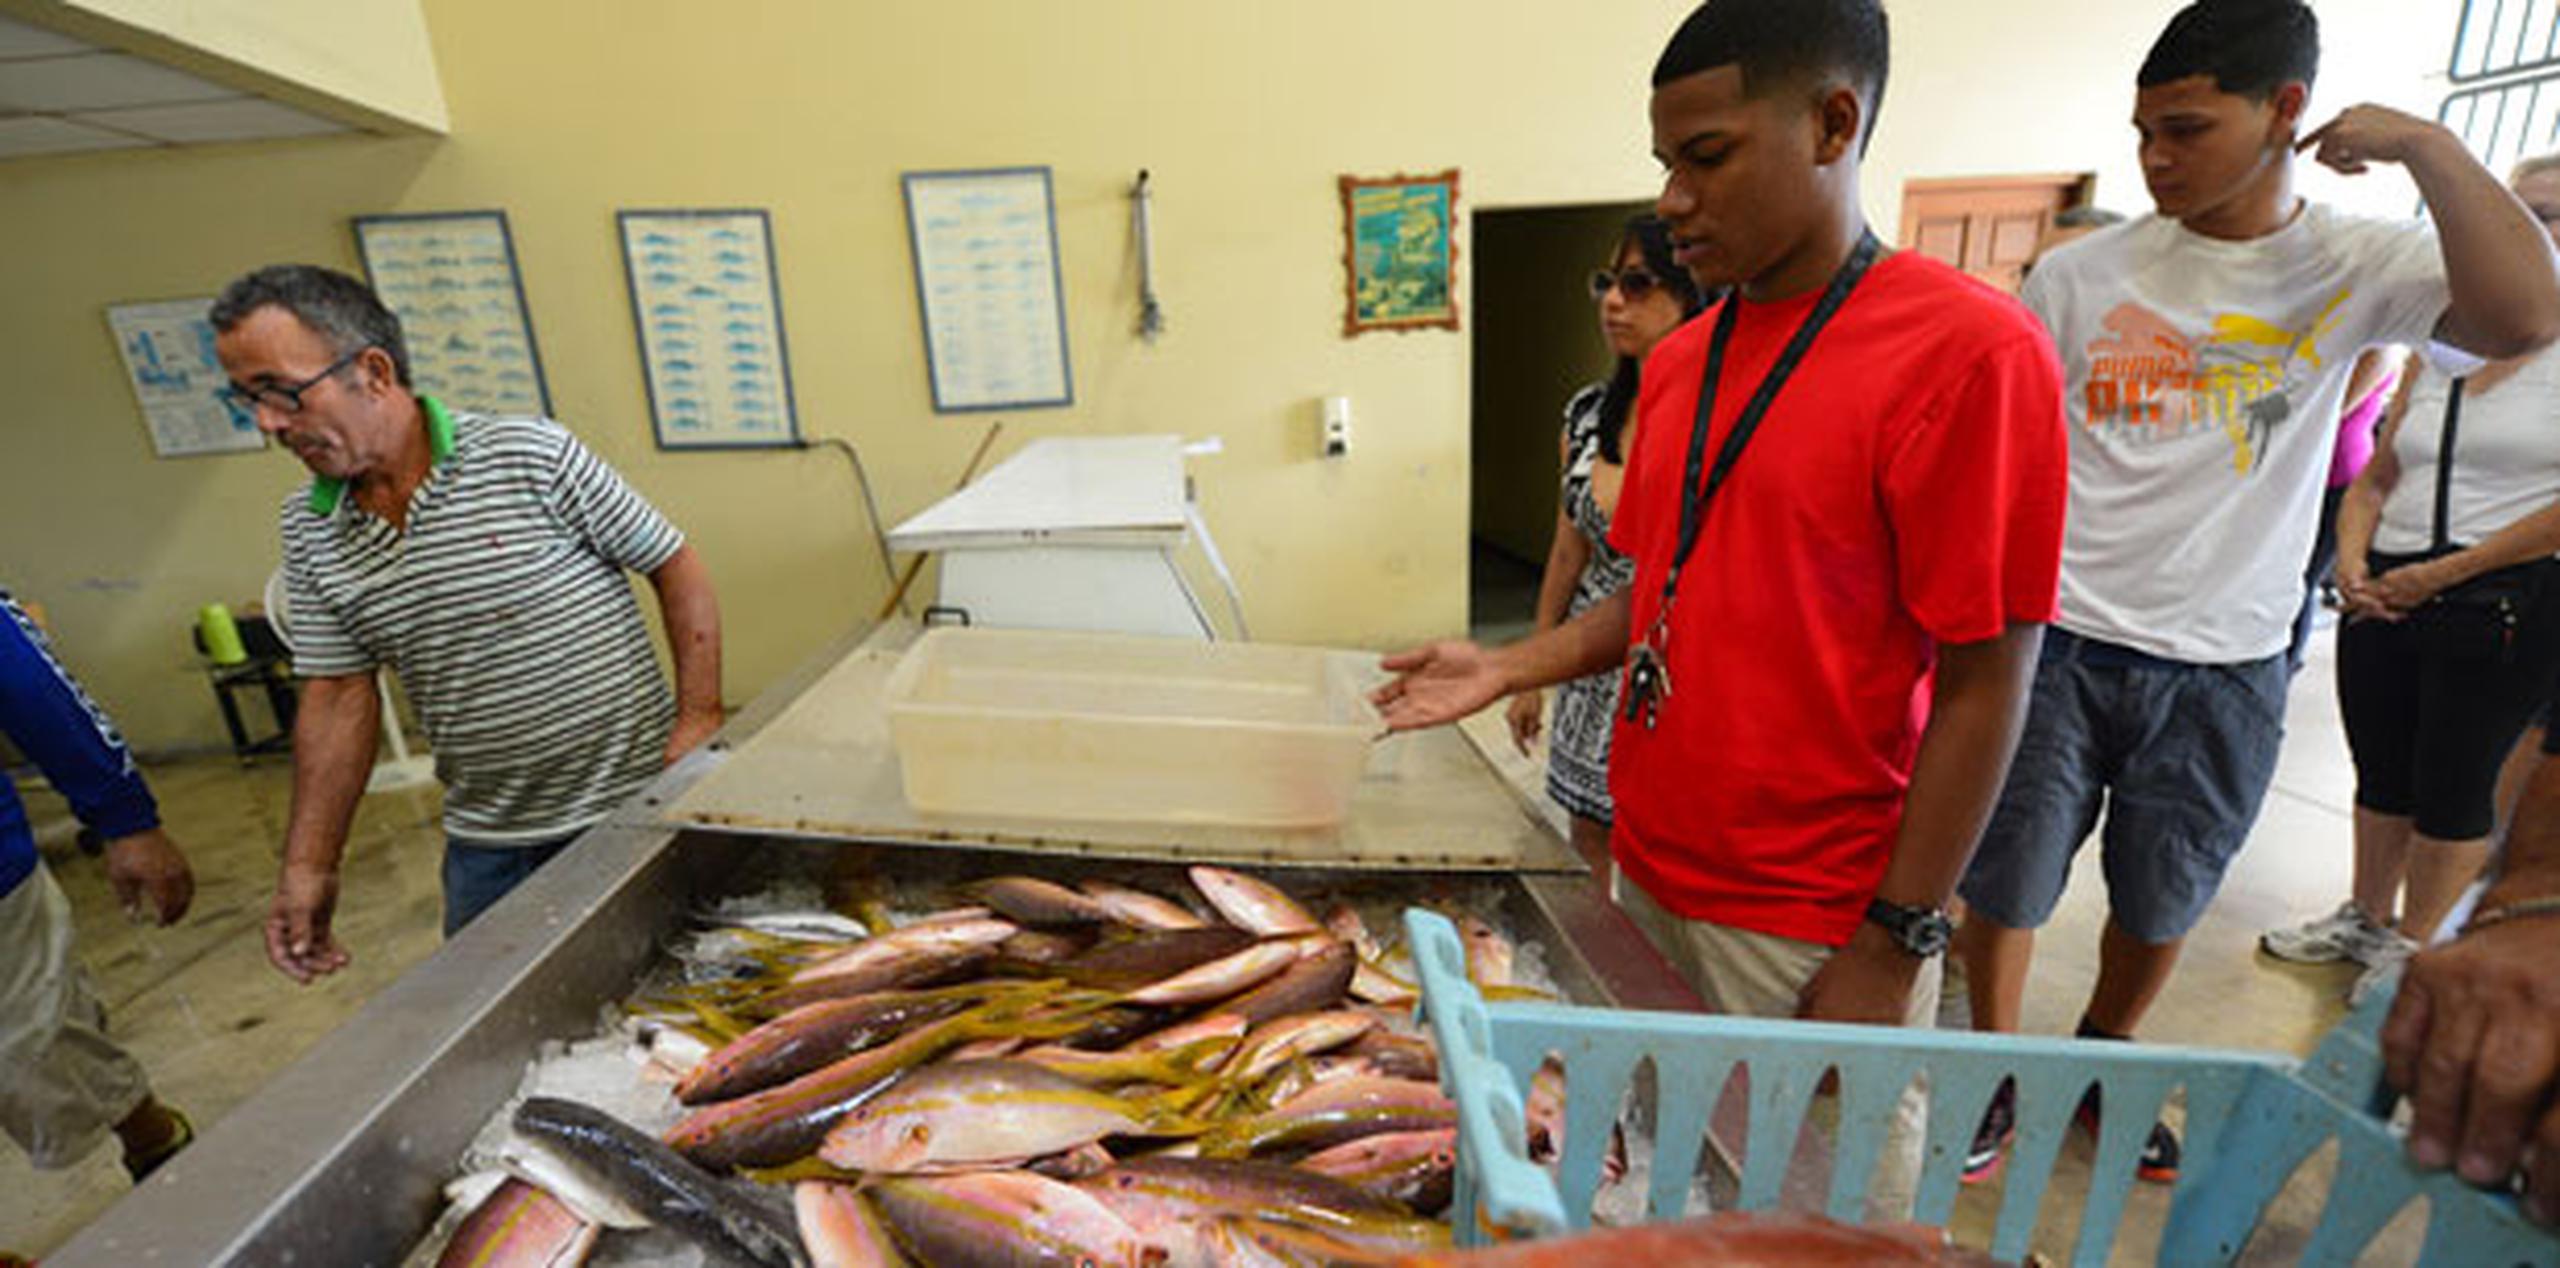 El pescado fresco que más se vende en Puerto Rico es la colirrubia y  el chillo. (luis.alcaladelolmo@gfrmedia.com)